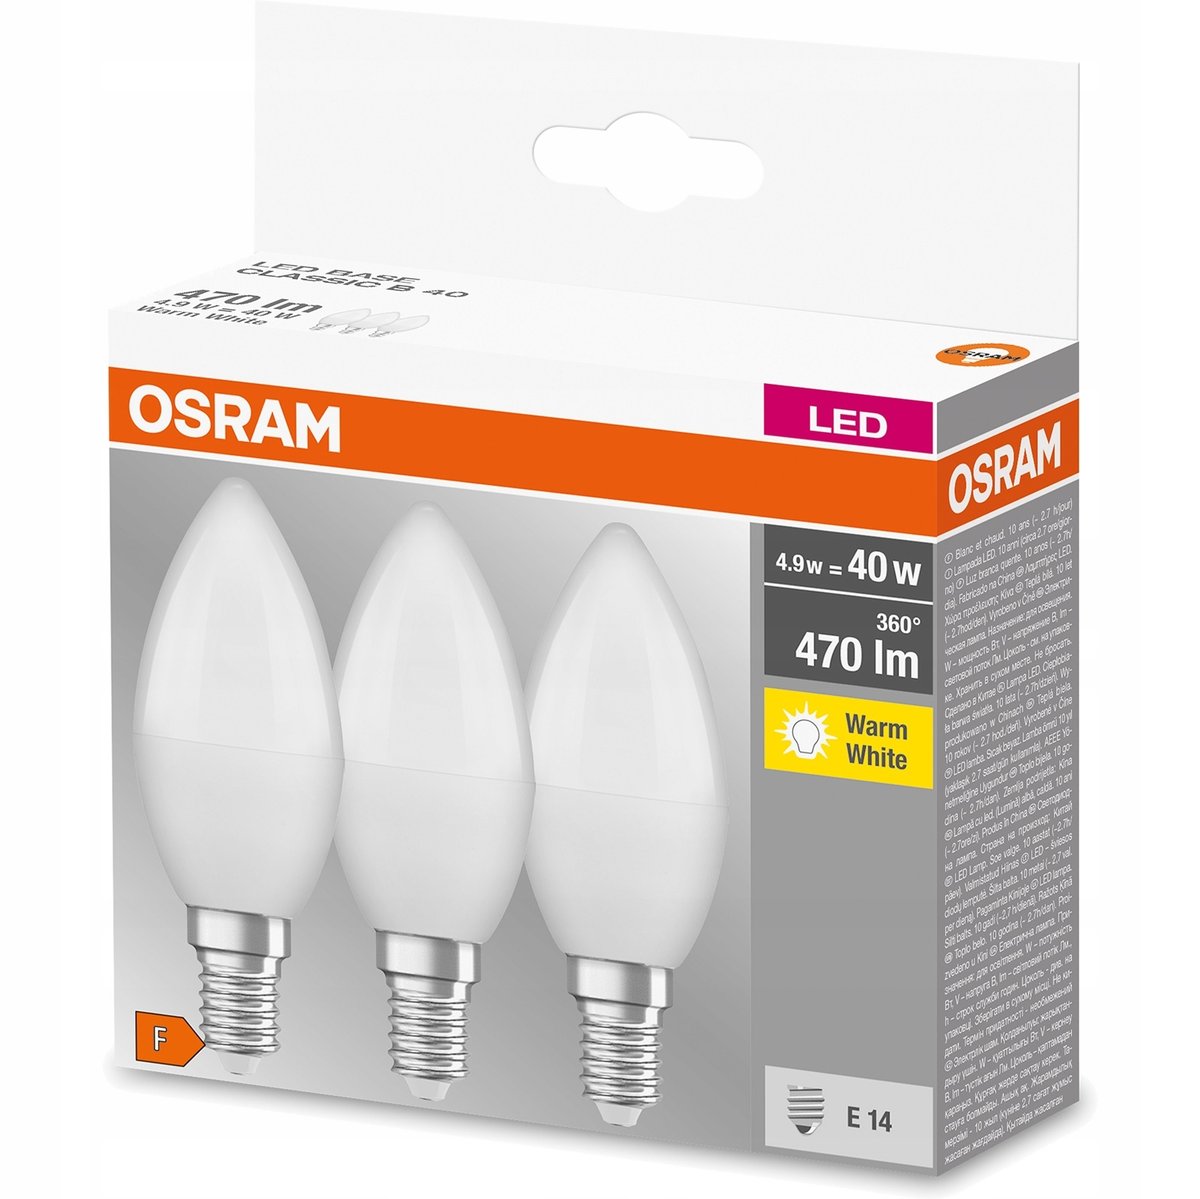 Osram BASE Classic B żarówka świeczka LED E14 / 5,7W - zamiennik dla żarówek o mocy 40 W, kolor: matowy, ciepła biel (2700 K), opakowanie promocyjne (3 szt.) 4052899955509